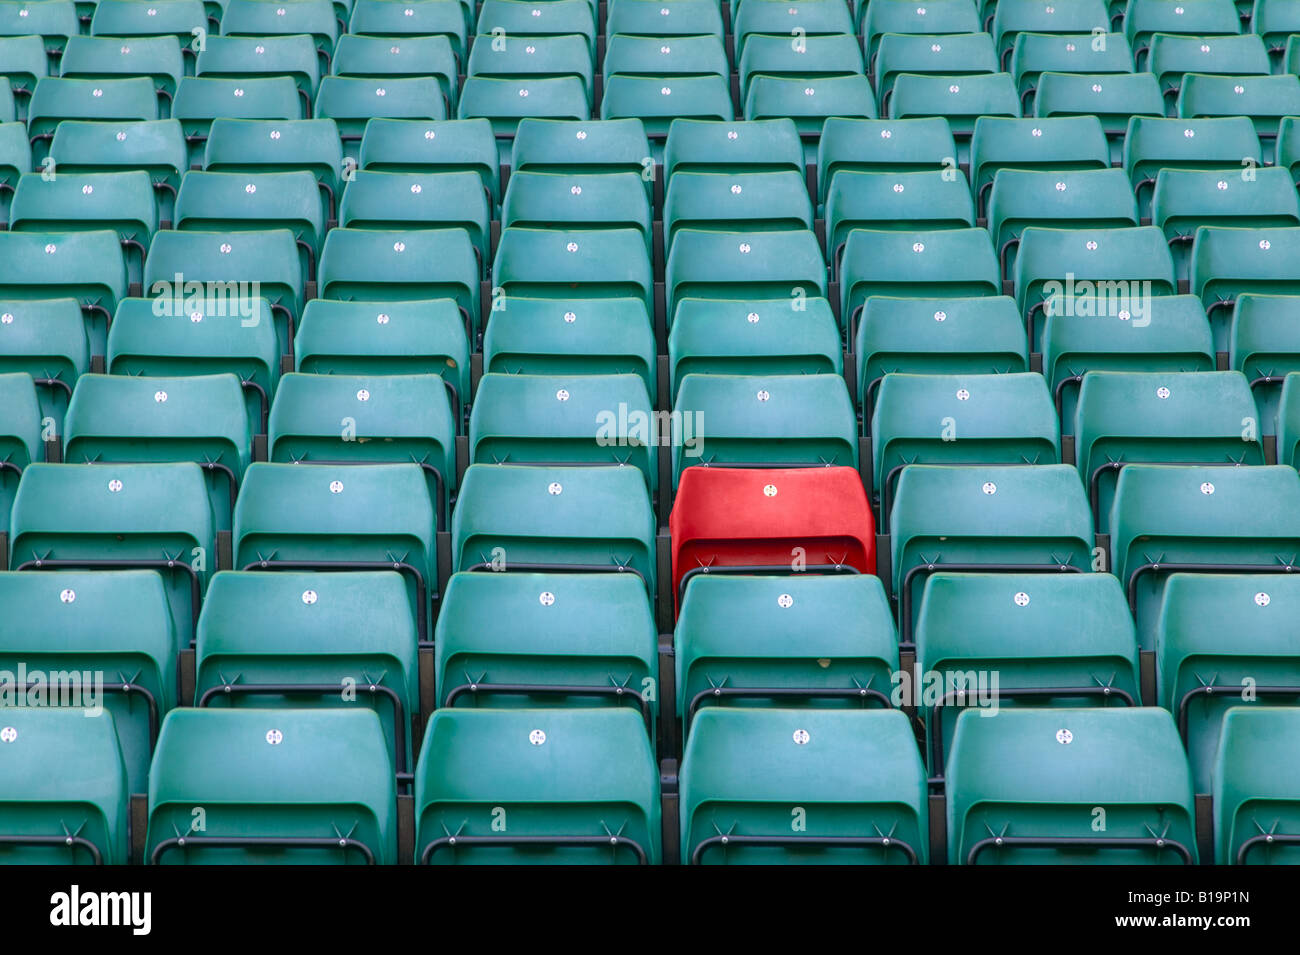 Uno rojo asiento entre las filas de asientos verdes en un estadio deportivo. Foto de stock